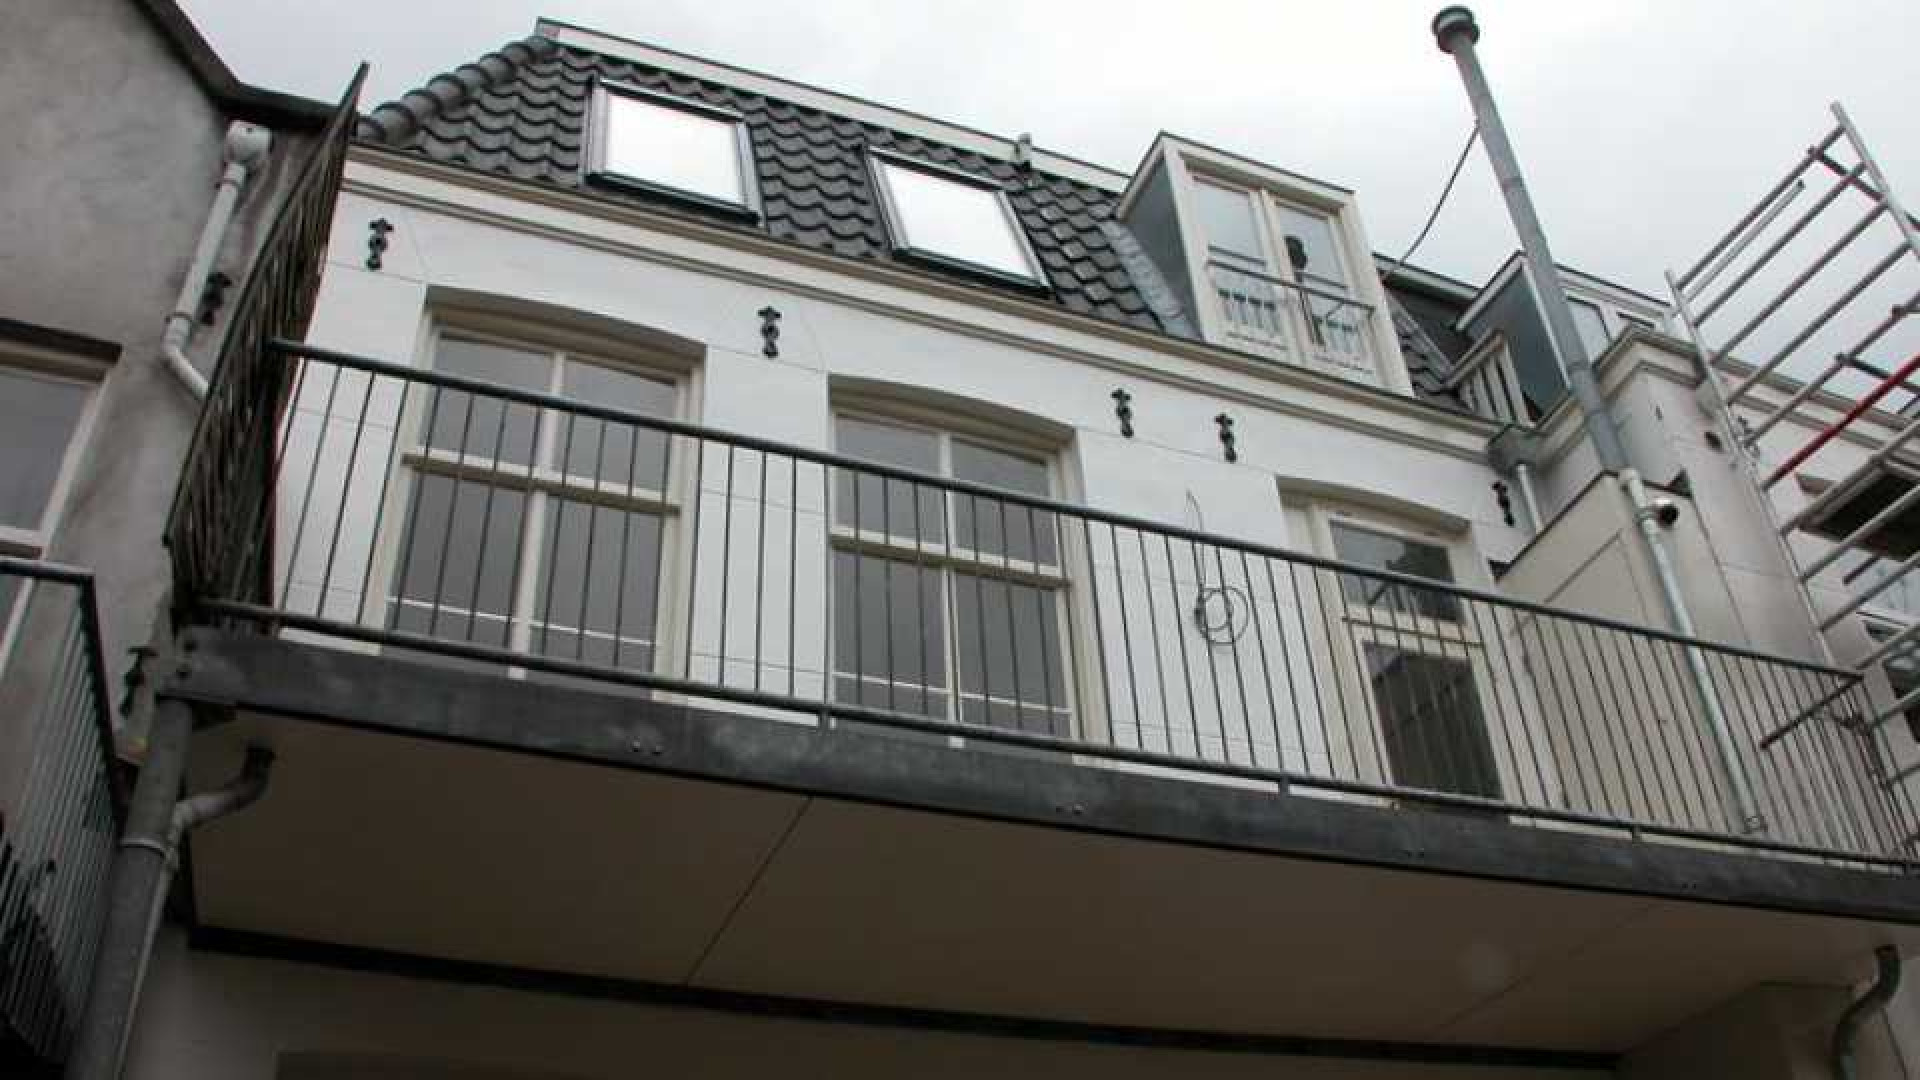 Dit is het nieuwe huurappartement van Gordon in de Amsterdamse PC Hooftstraat. Zie foto's